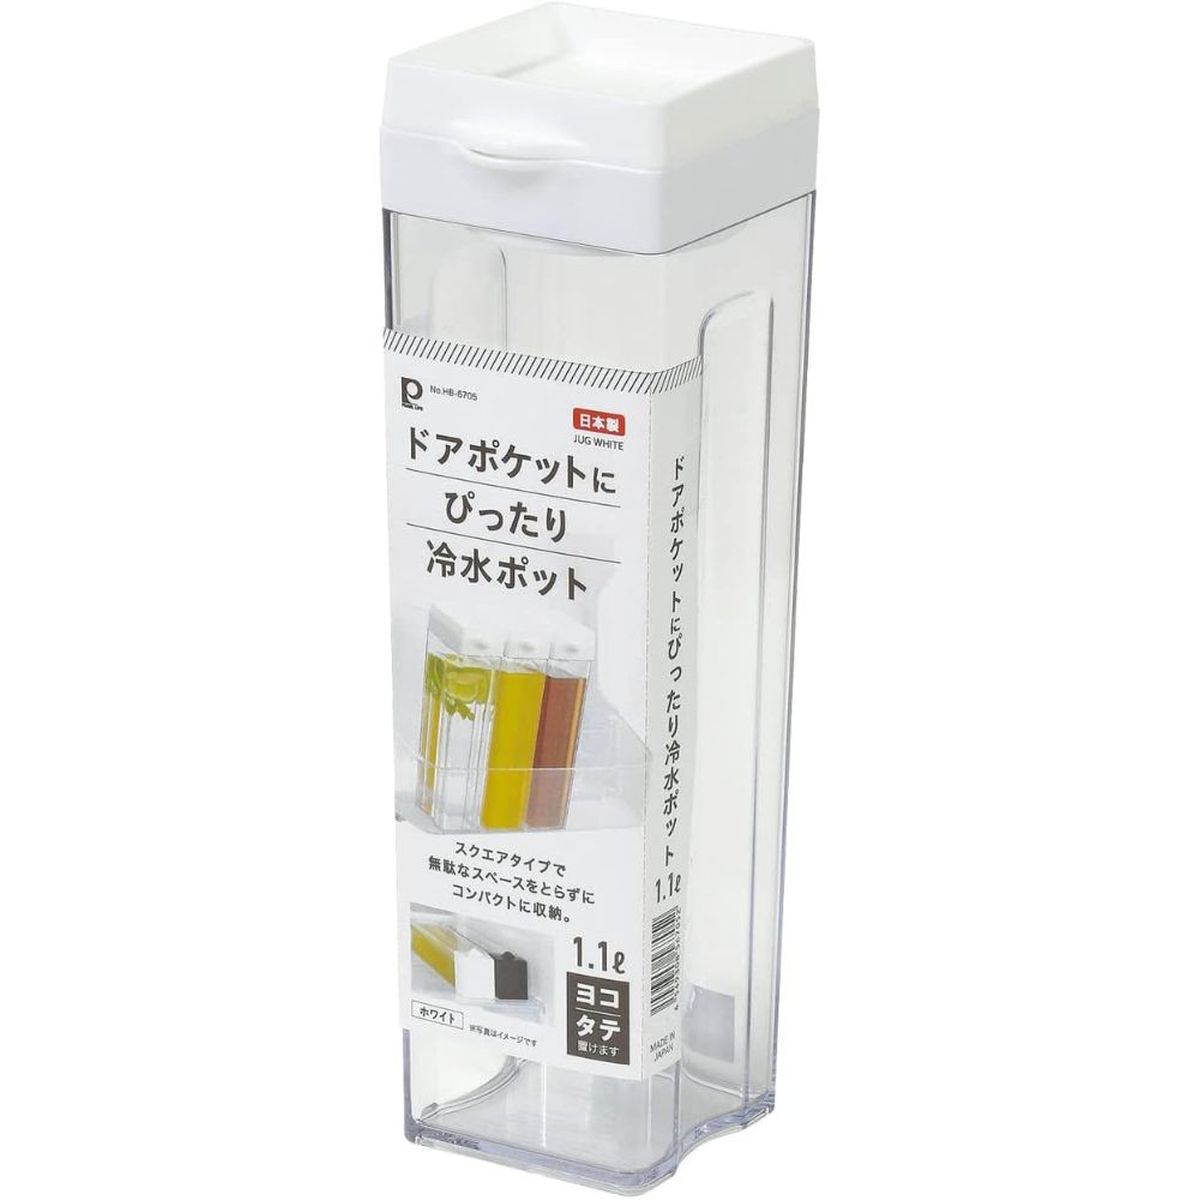 冷水ポット 冷水筒 ピッチャー 1.1L タテヨコ お茶 麦茶 日本製 ホワイト ドアポケットにぴったり